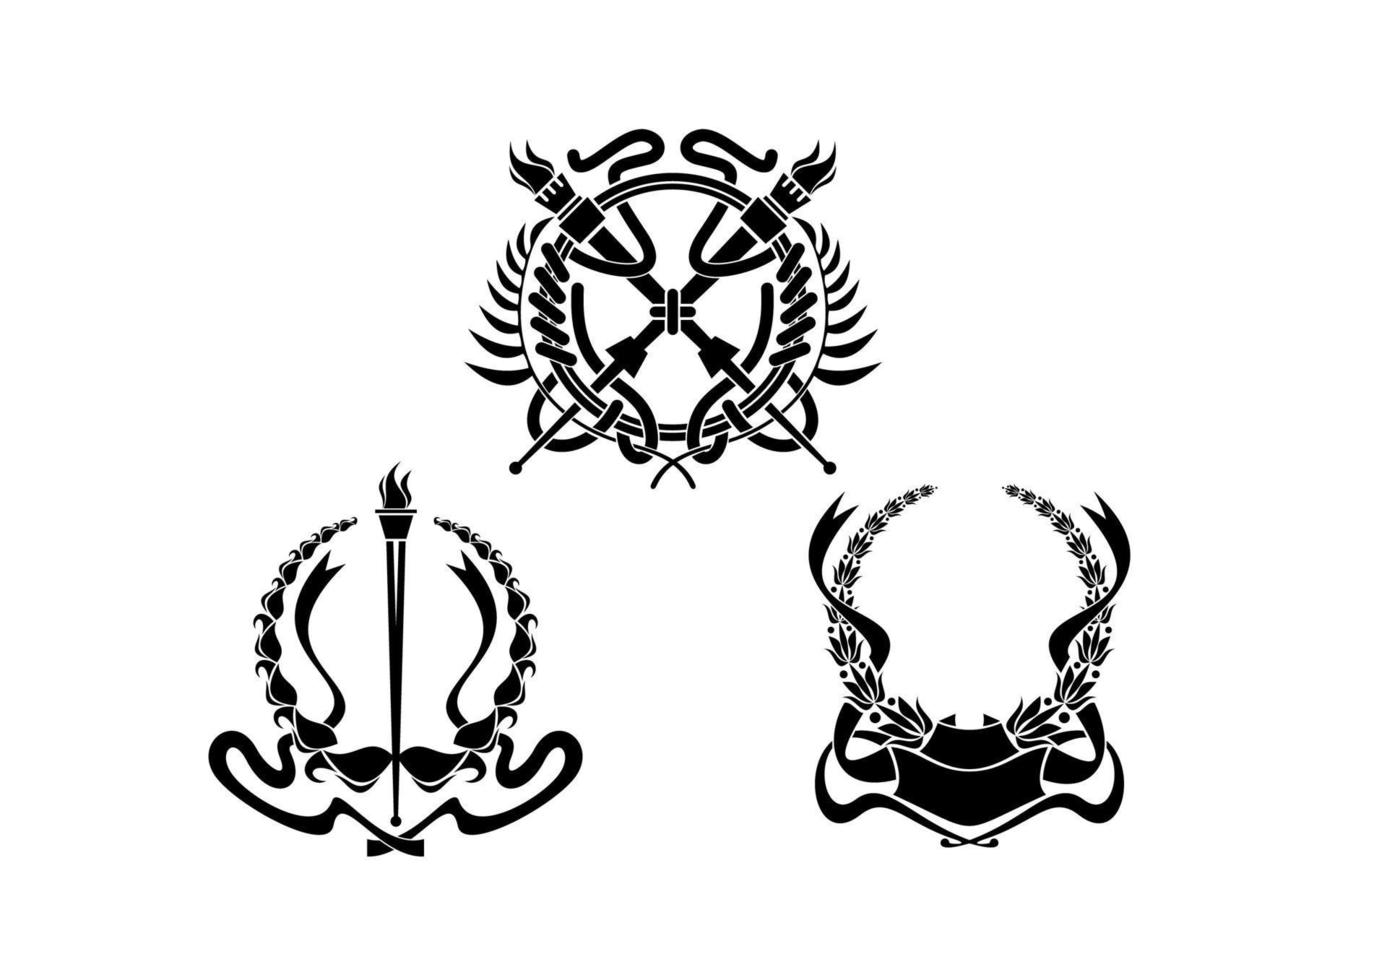 jassen van armen met heraldisch elementen vector